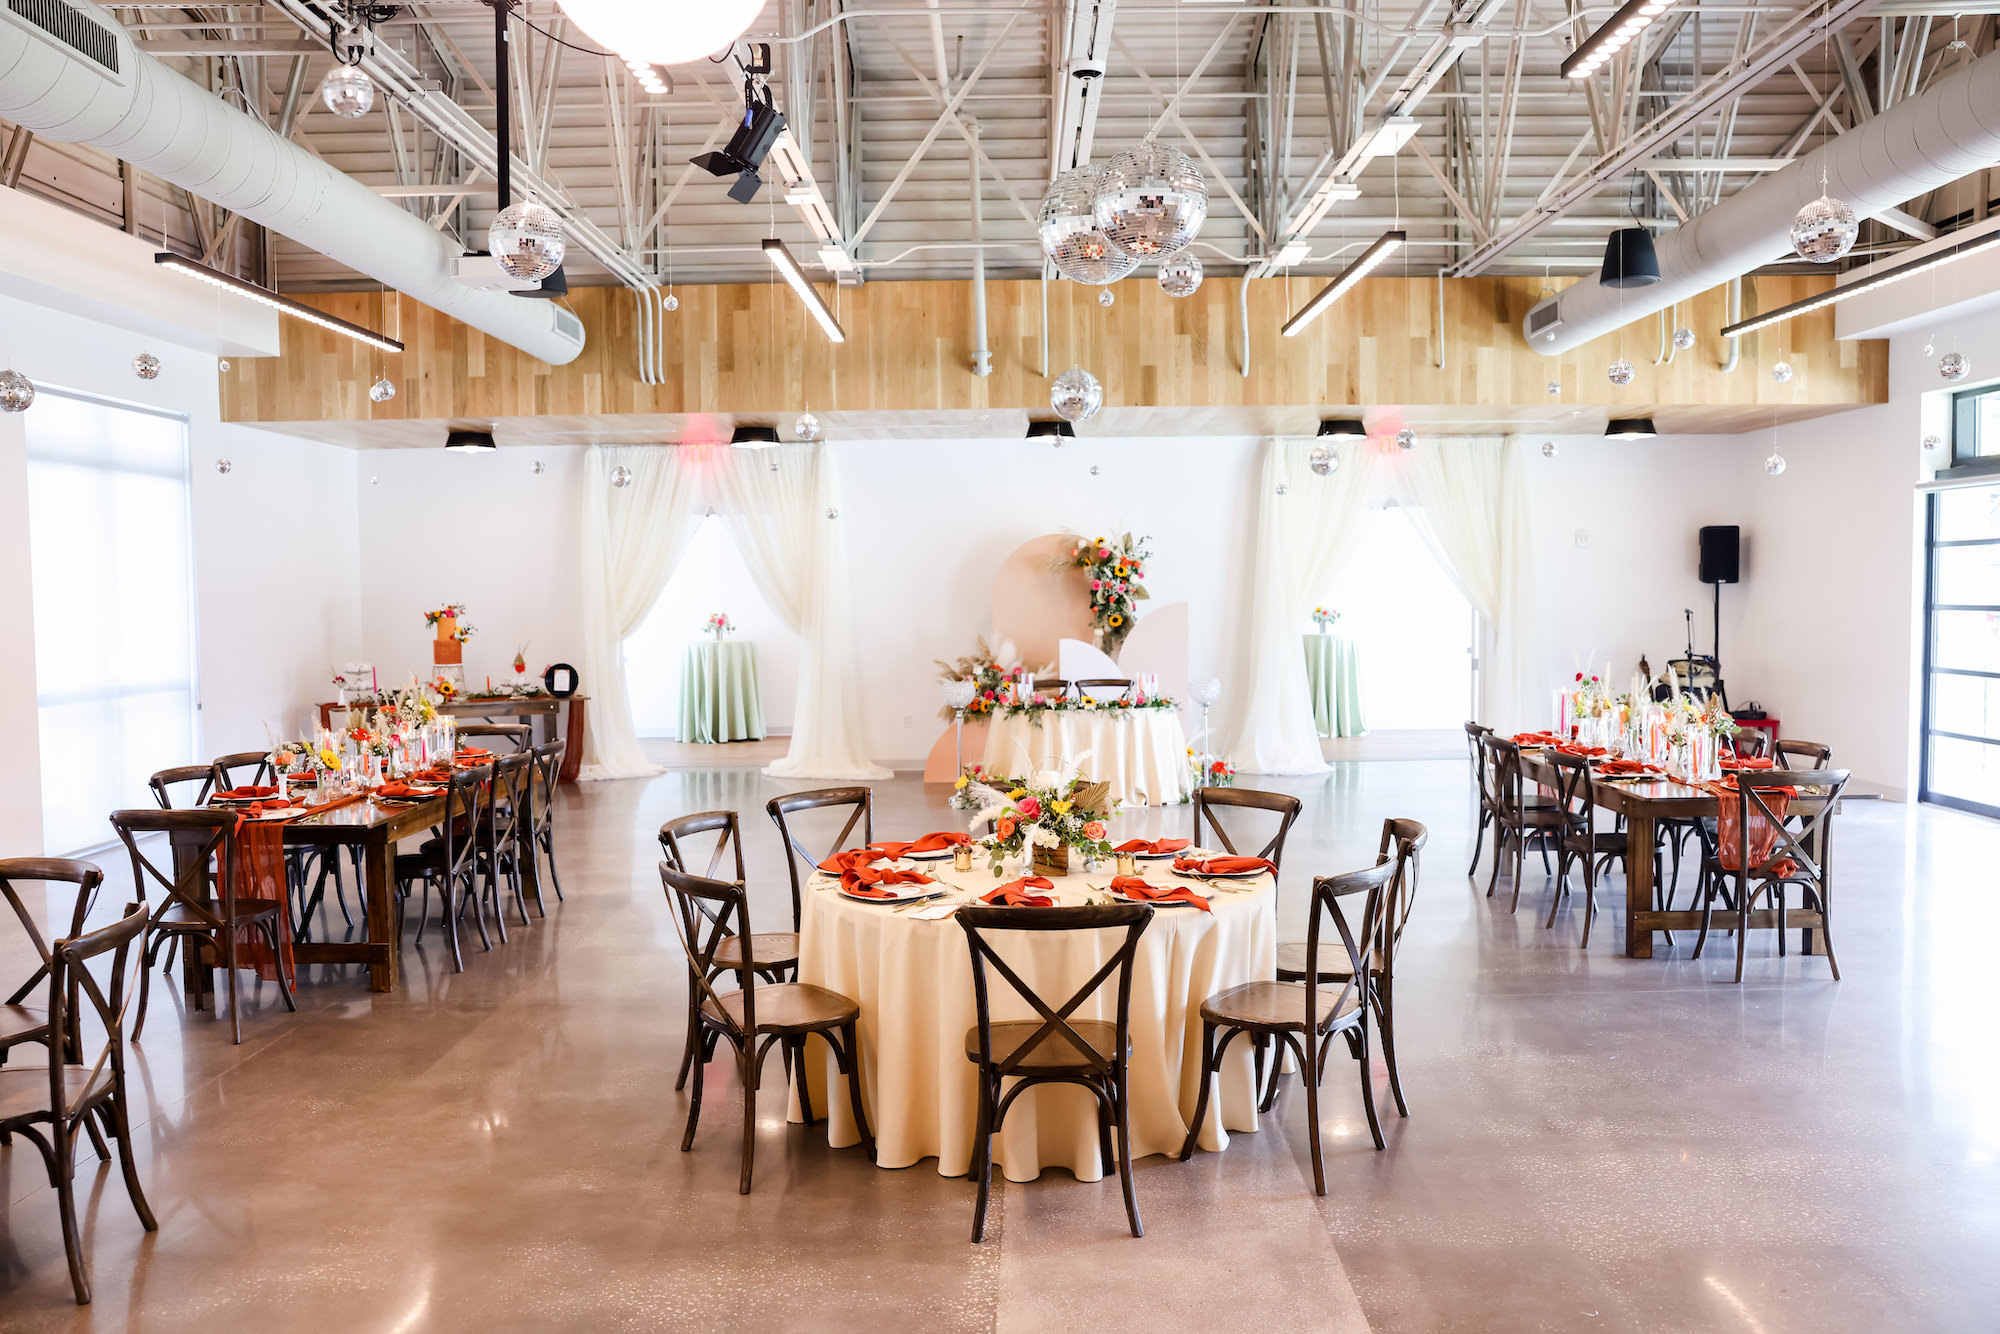 Indoor Brewers Hall Wedding Reception | Tampa Bay Wedding Venue Florida Avenue Brewing Company | Planner Breezin' Weddings